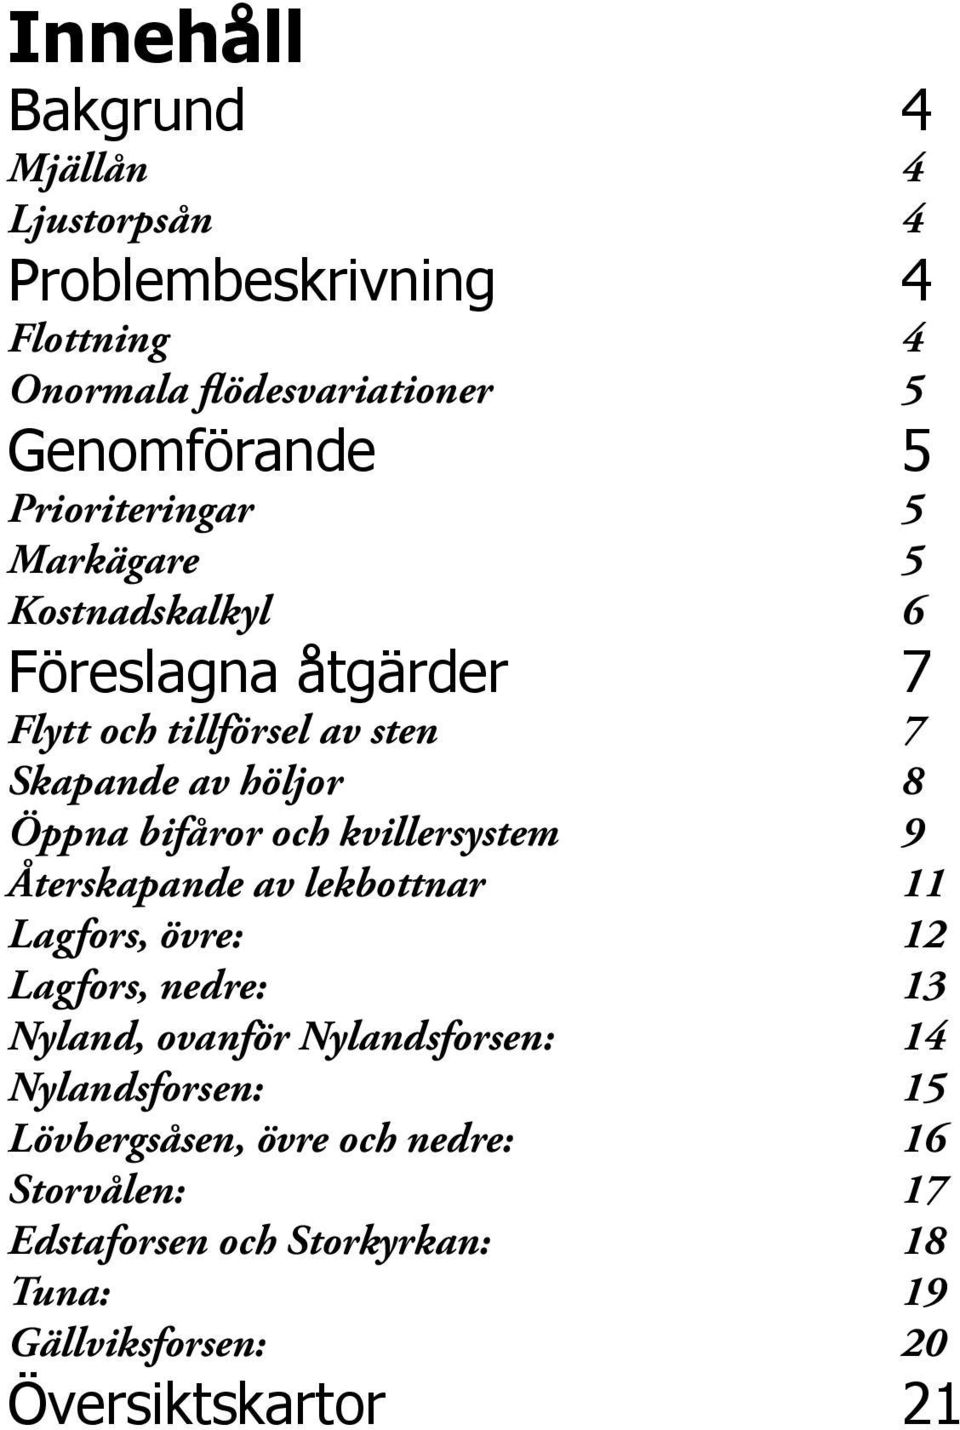 bifåror och kvillersystem 9 Återskapande av lekbottnar 11 Lagfors, övre: 12 Lagfors, nedre: 13 Nyland, ovanför Nylandsforsen: 14